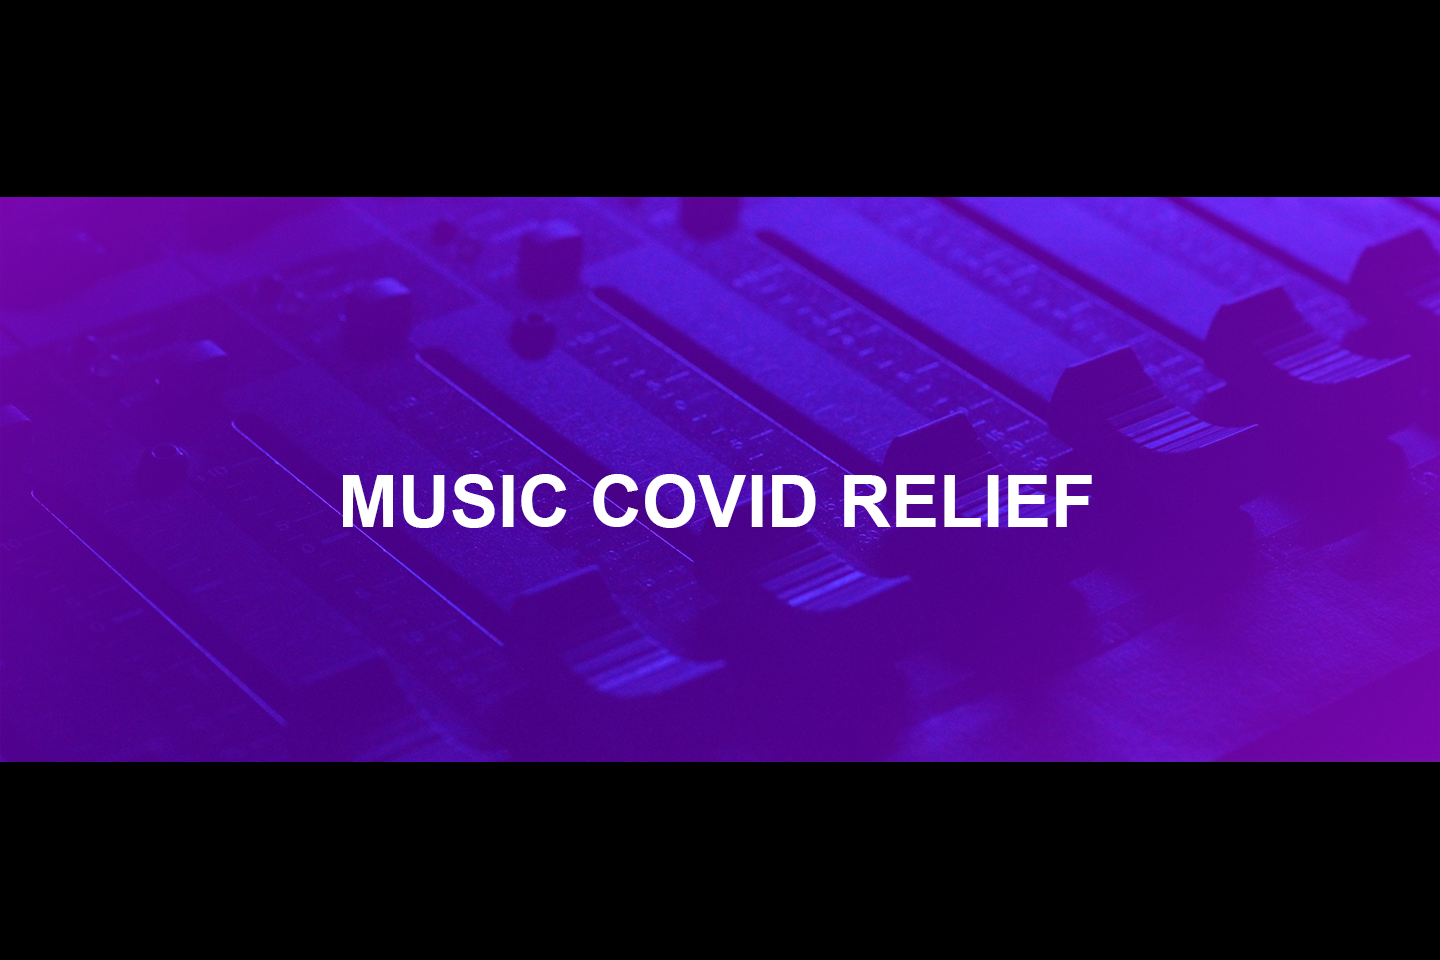 Music Covid Relief